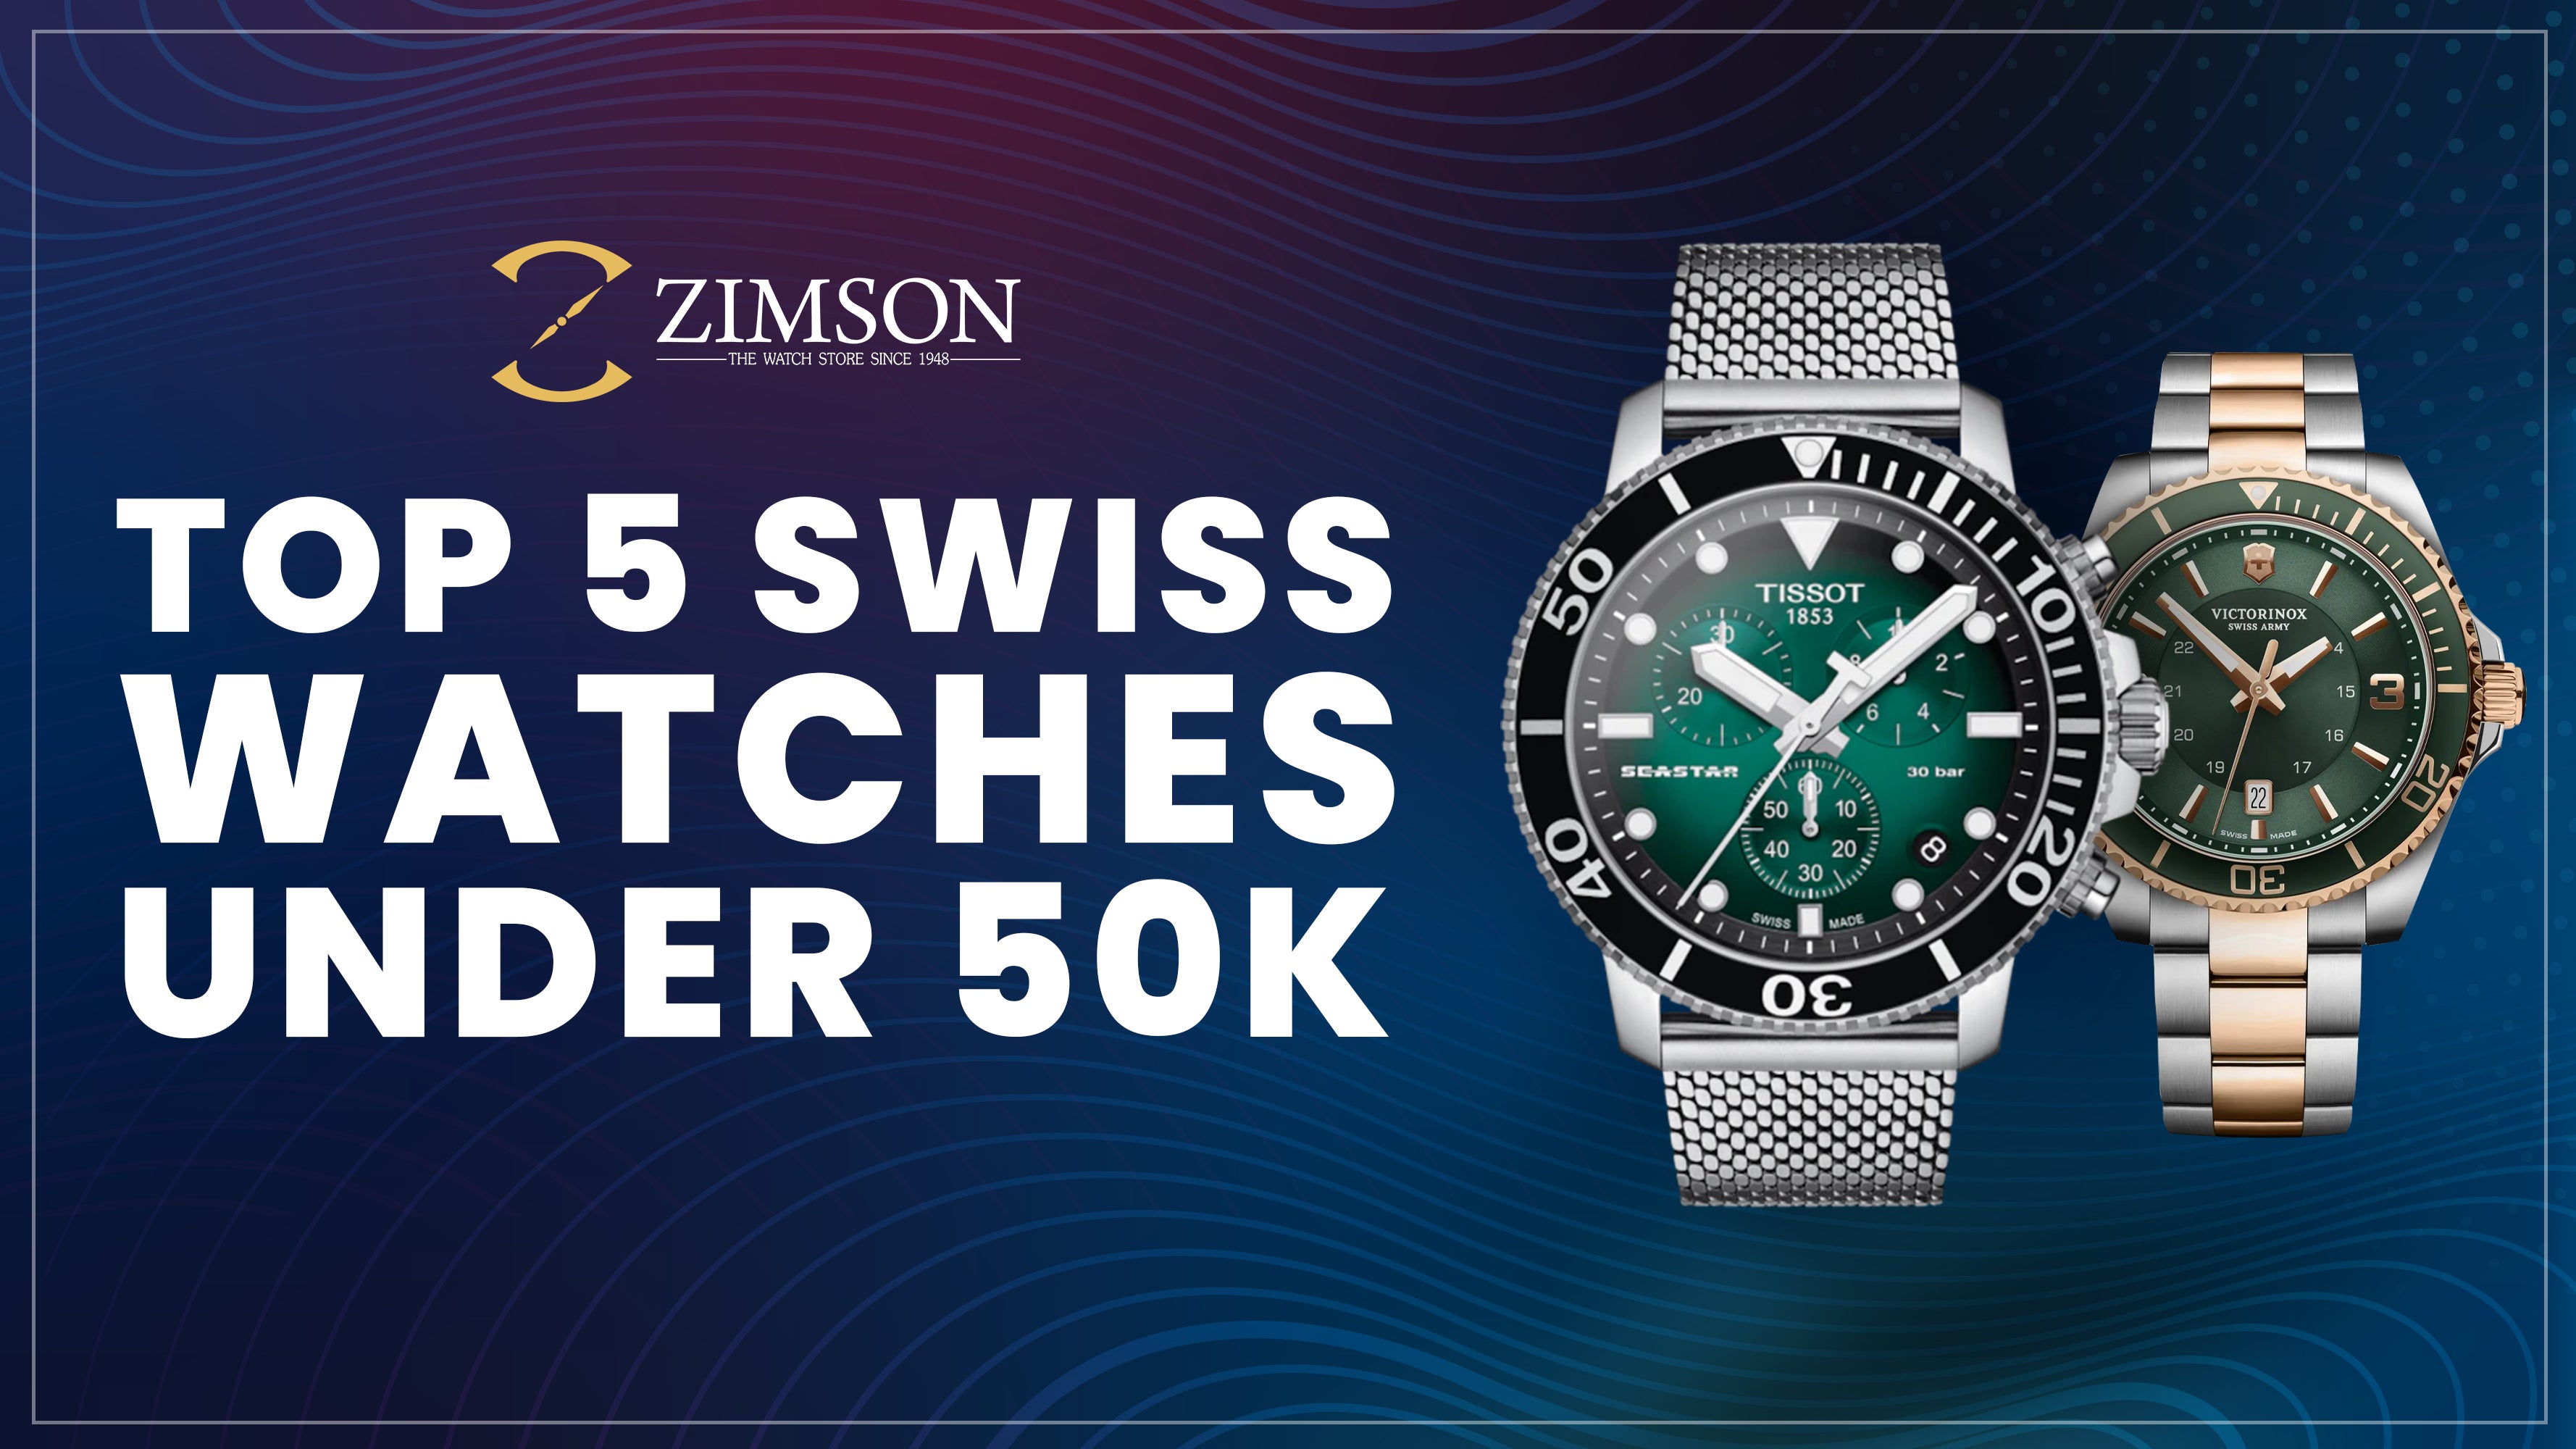 Zimson Watches Madurai - Calvin Klein Zimson 0452 4981133 | Facebook